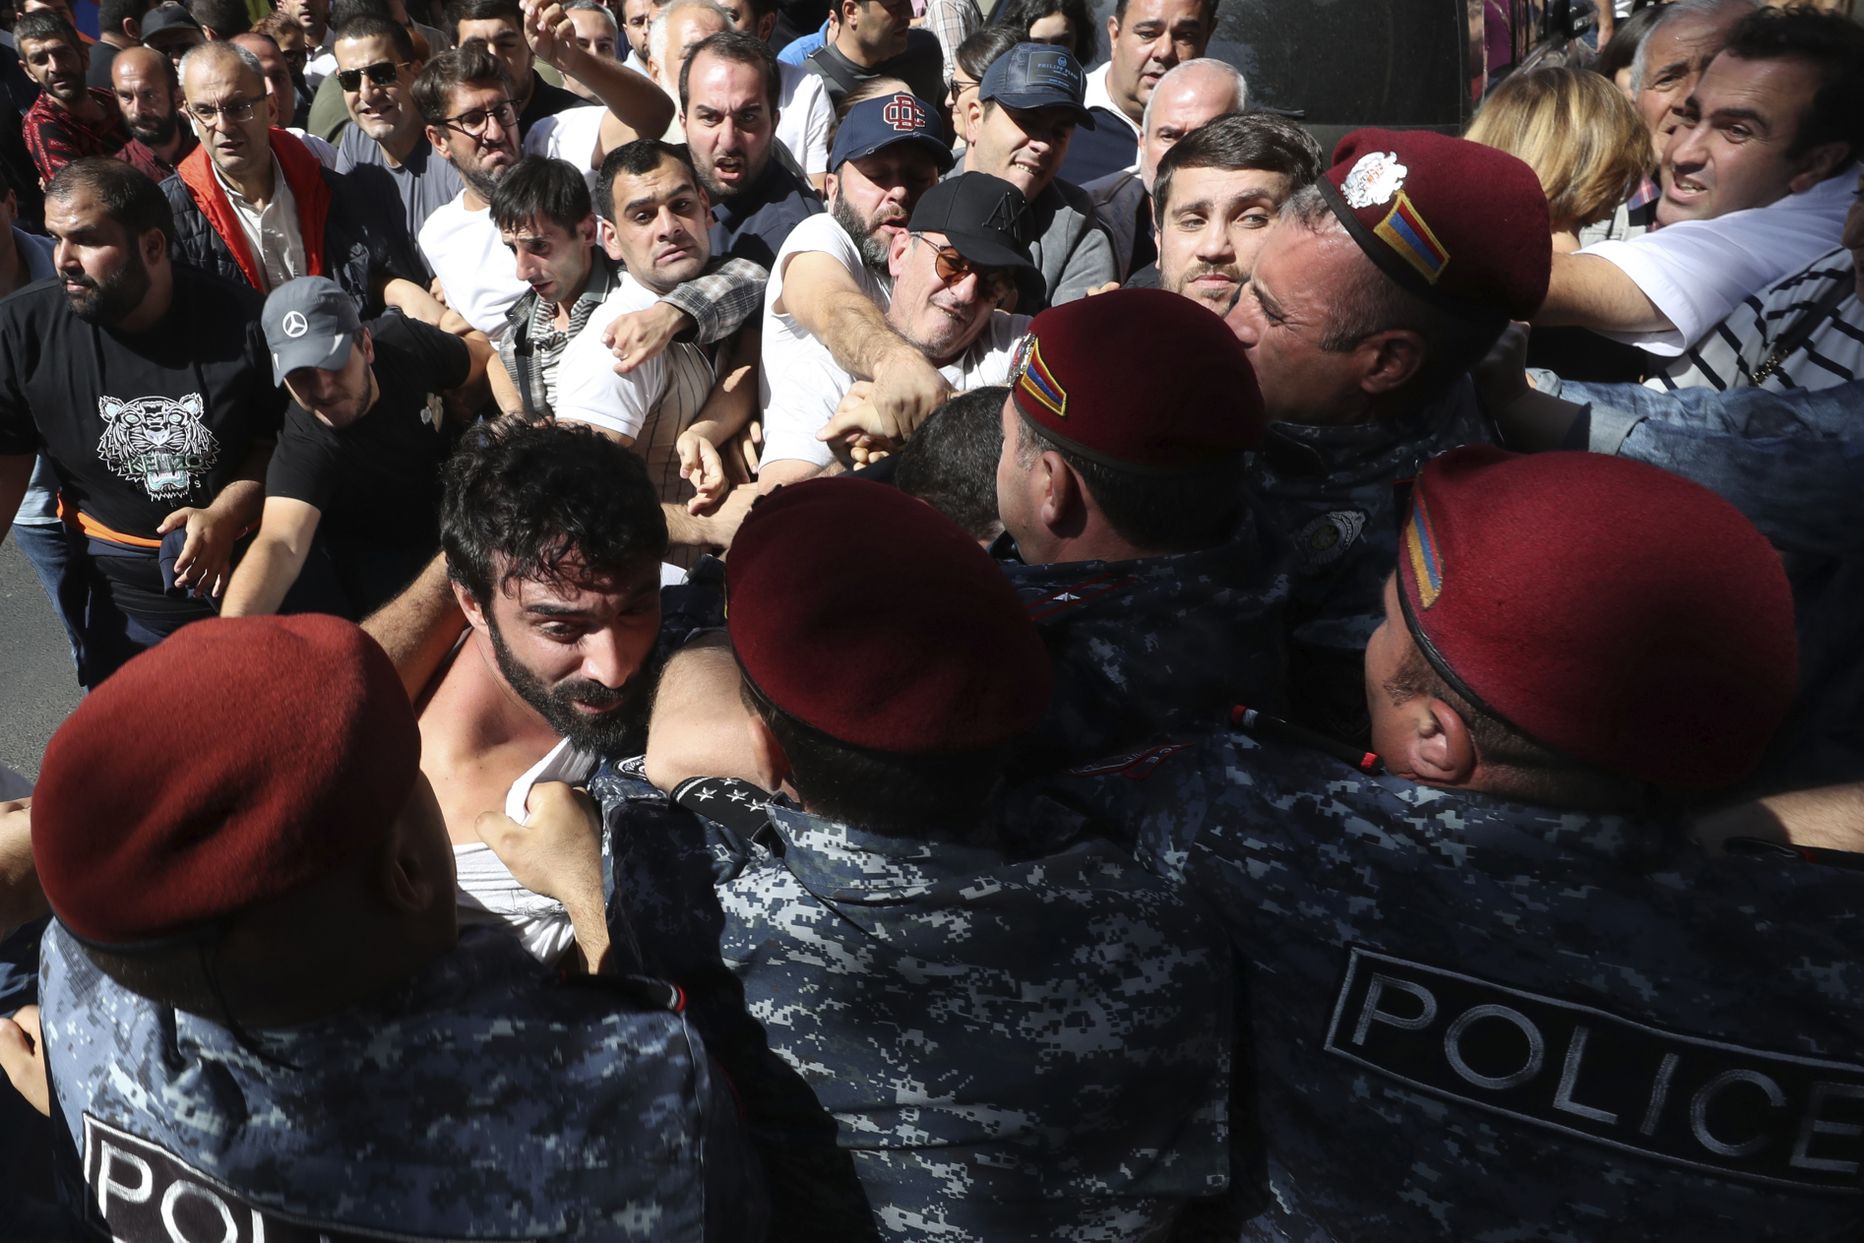 Столкновения демонстрантов с полицией в Ереване